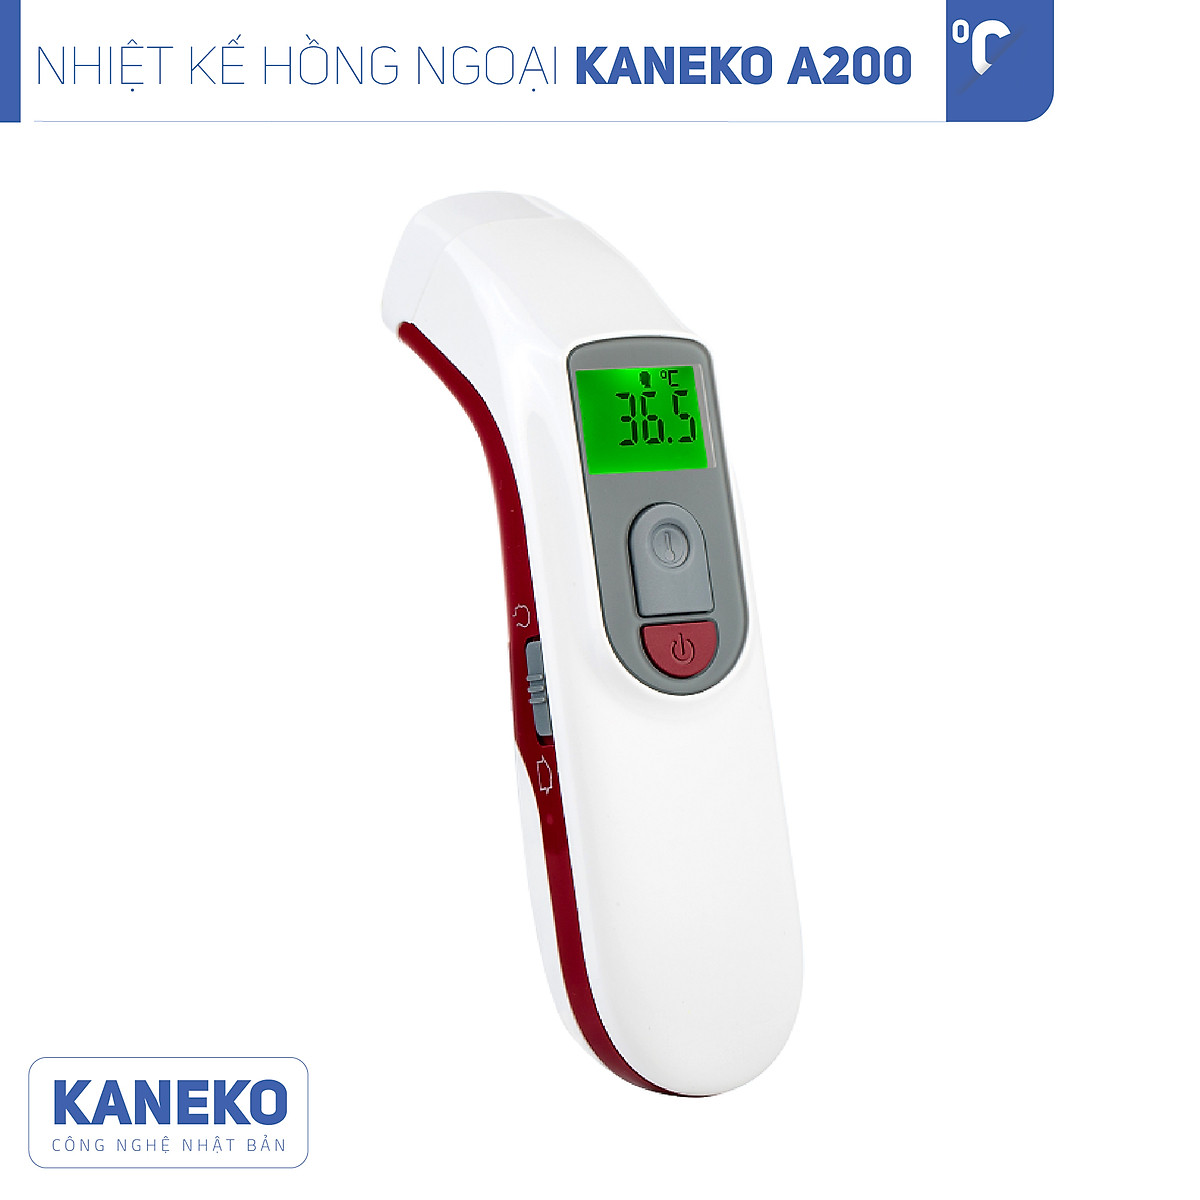 Nhiệt kế hồng ngoại KANEKO A200,Nhiệt kế cầm tay,Nhiệt kế đo trán,Nhiệt kế điện tử,Nhiệt kế đo độ sữa,Nhiệt kế đo nhiệt độ dành cho trẻ em,Máy đo thân nhiệt